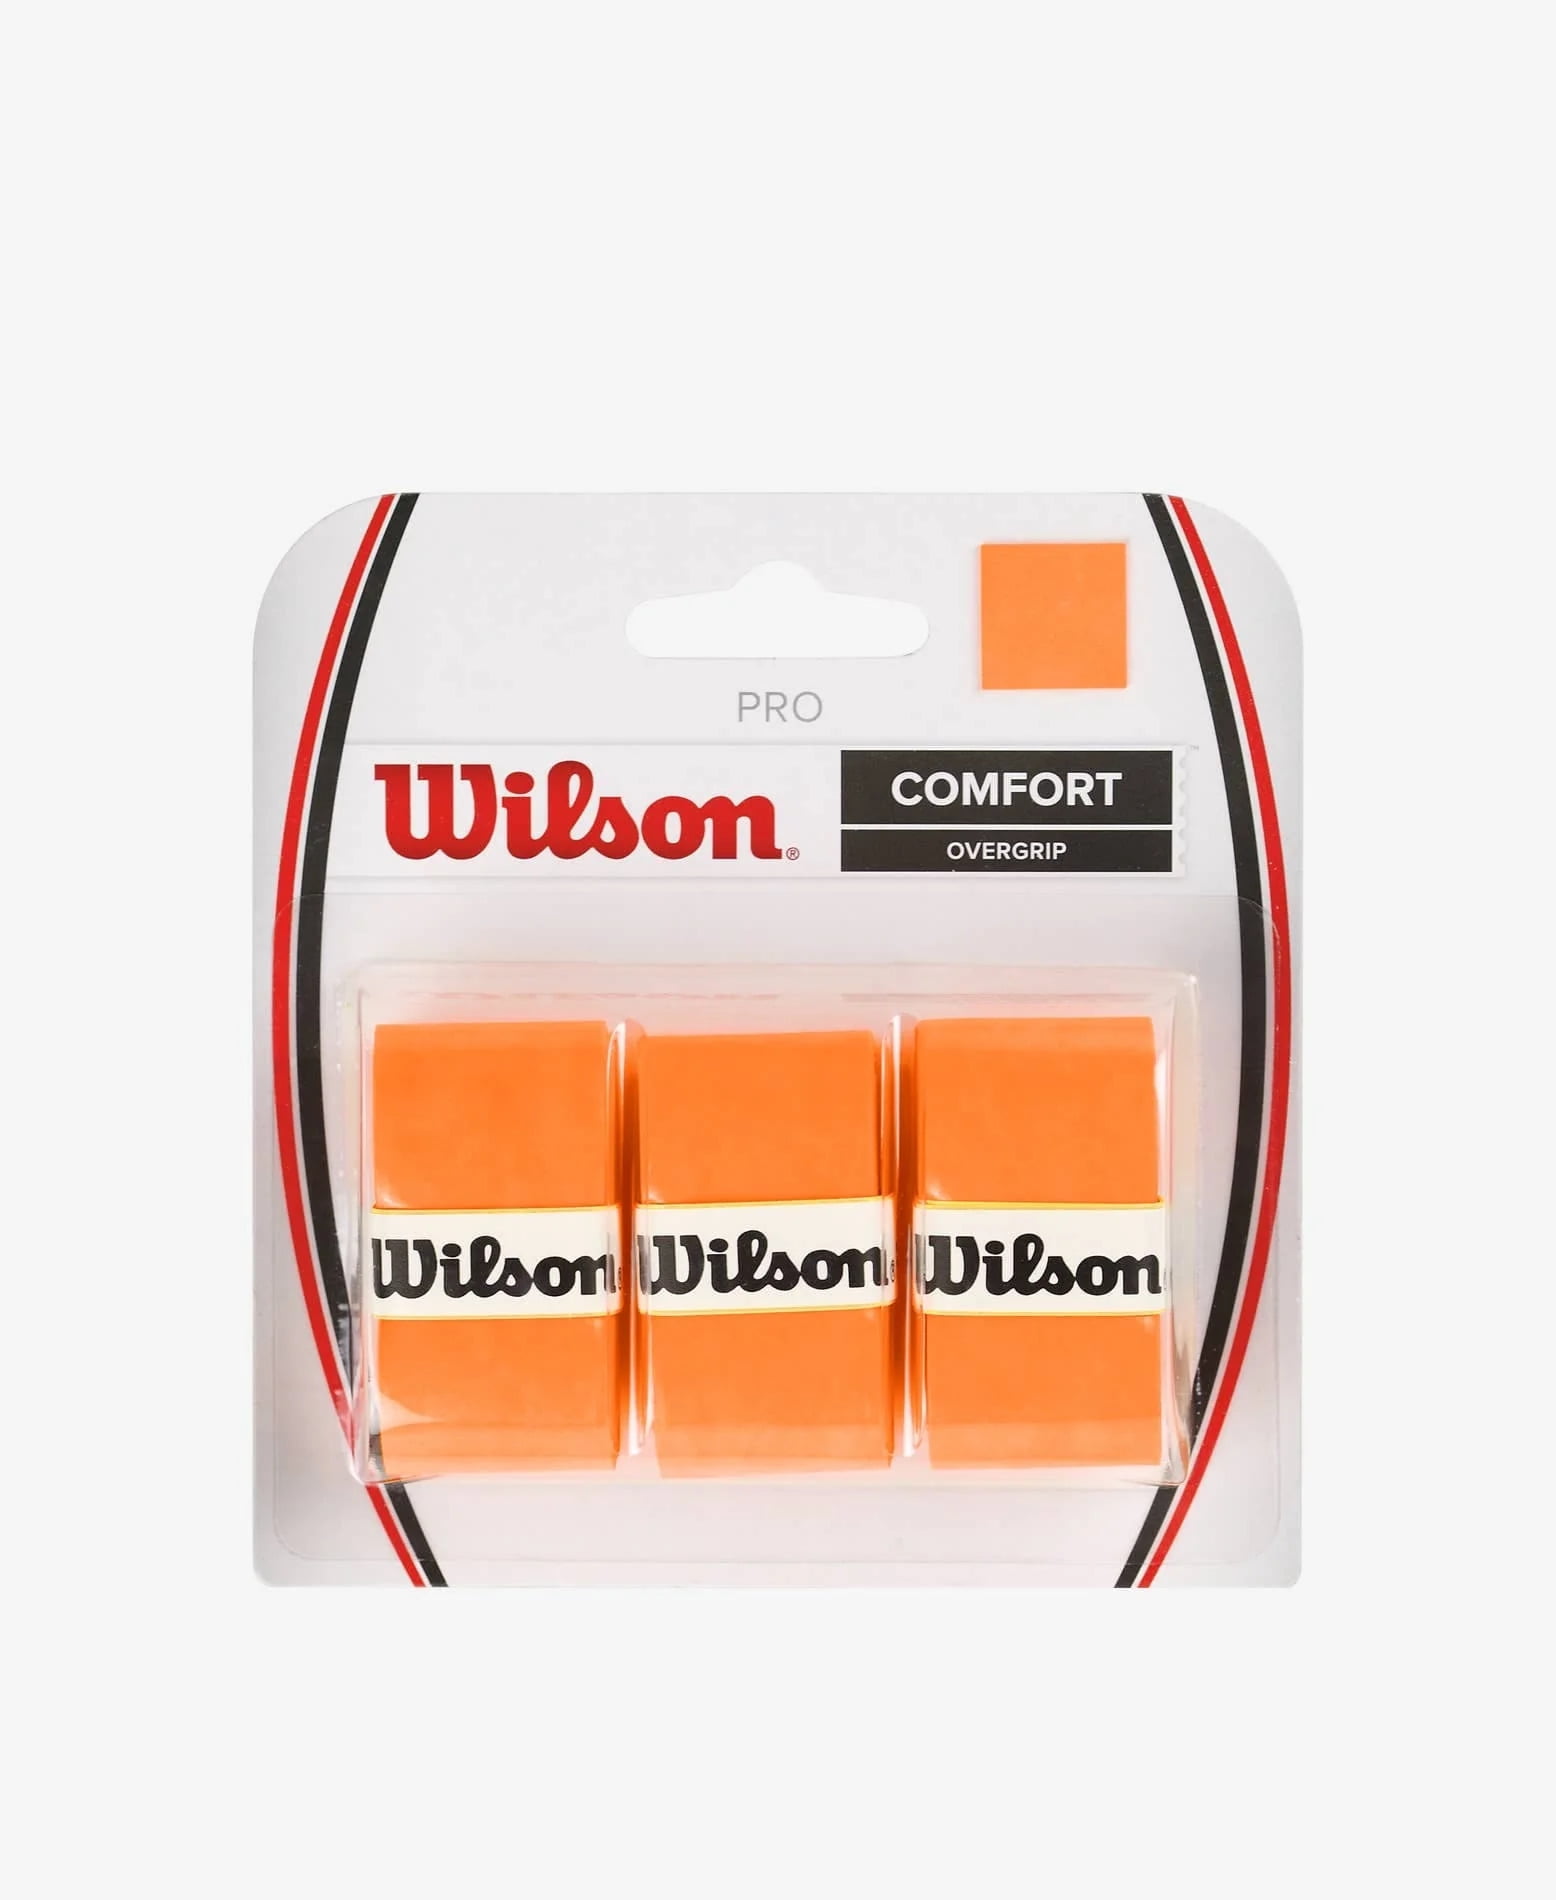 Wilson Pro Comfort Overgrip for Tennis Rackets, Green - 3 Rolls 